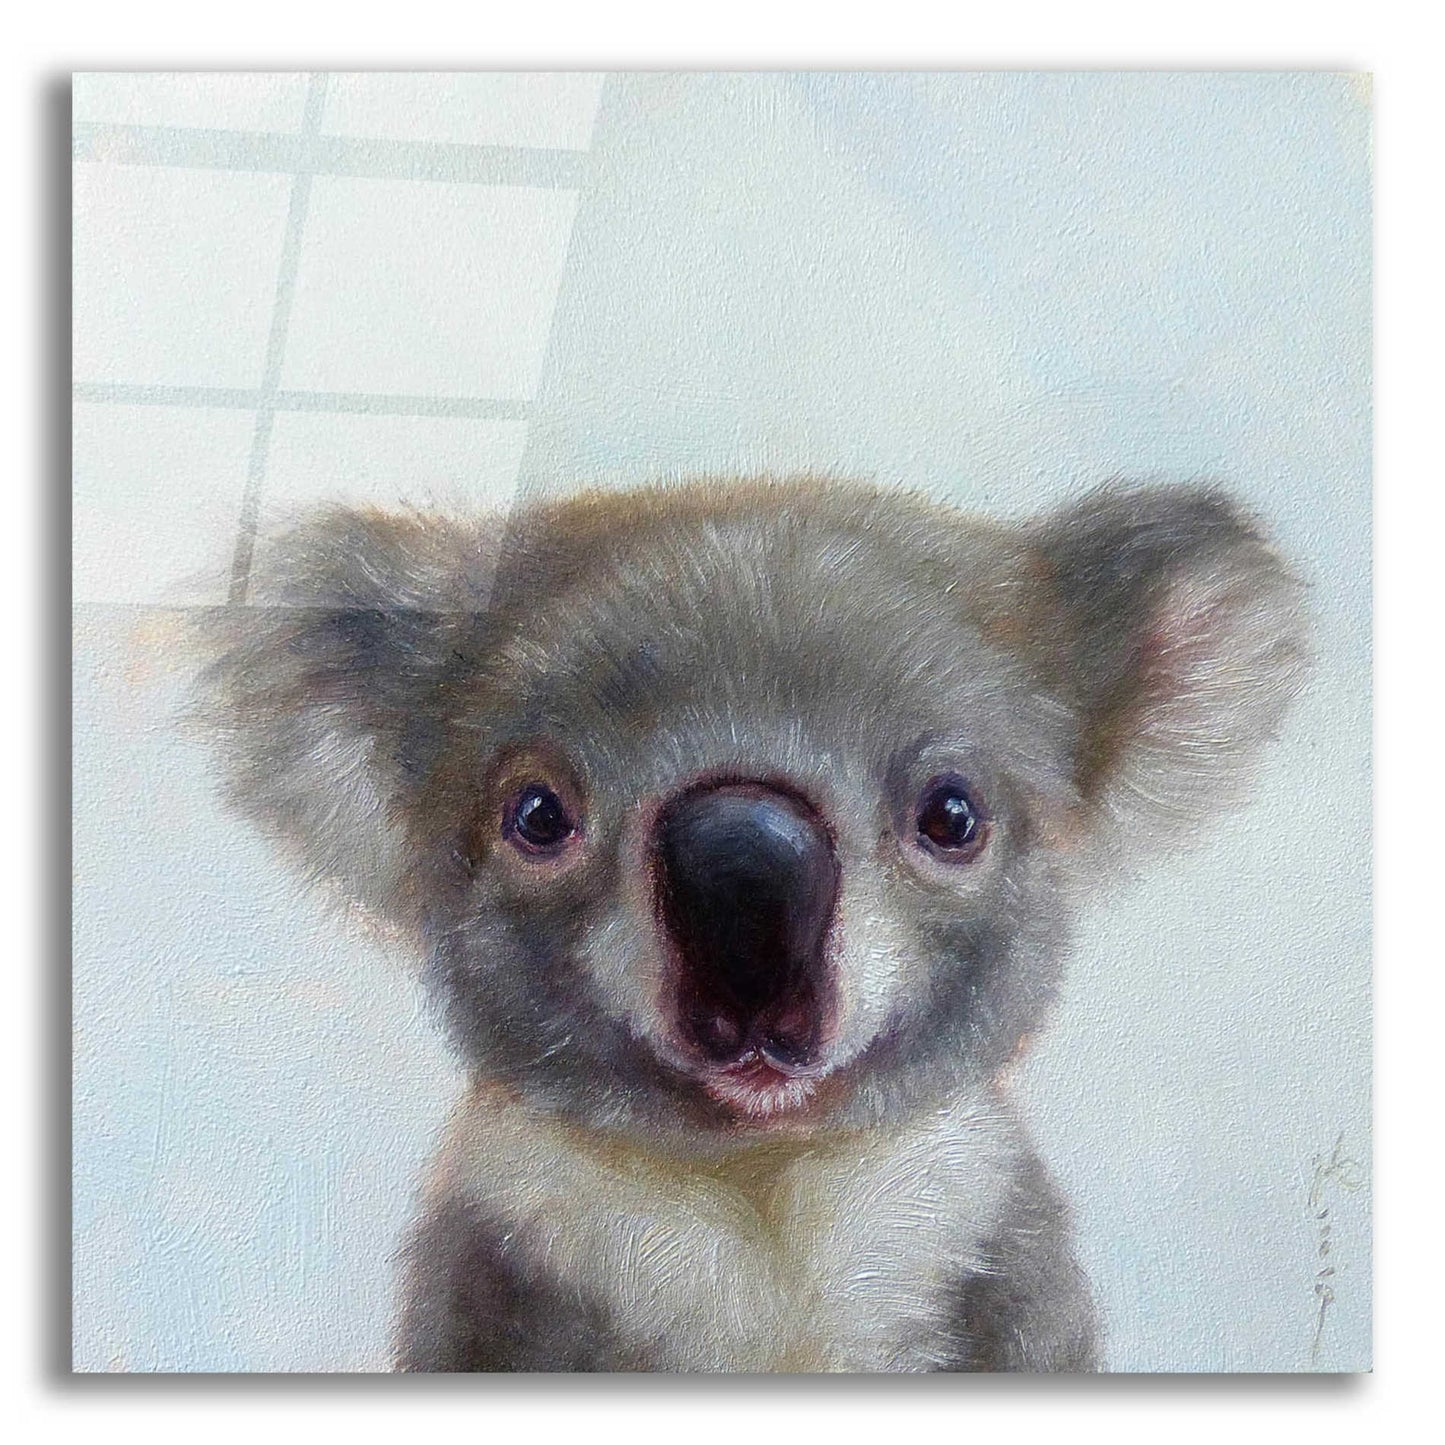 Epic Art 'Lil Koala' by Lucia Heffernan, Acrylic Glass Wall Art,12x12